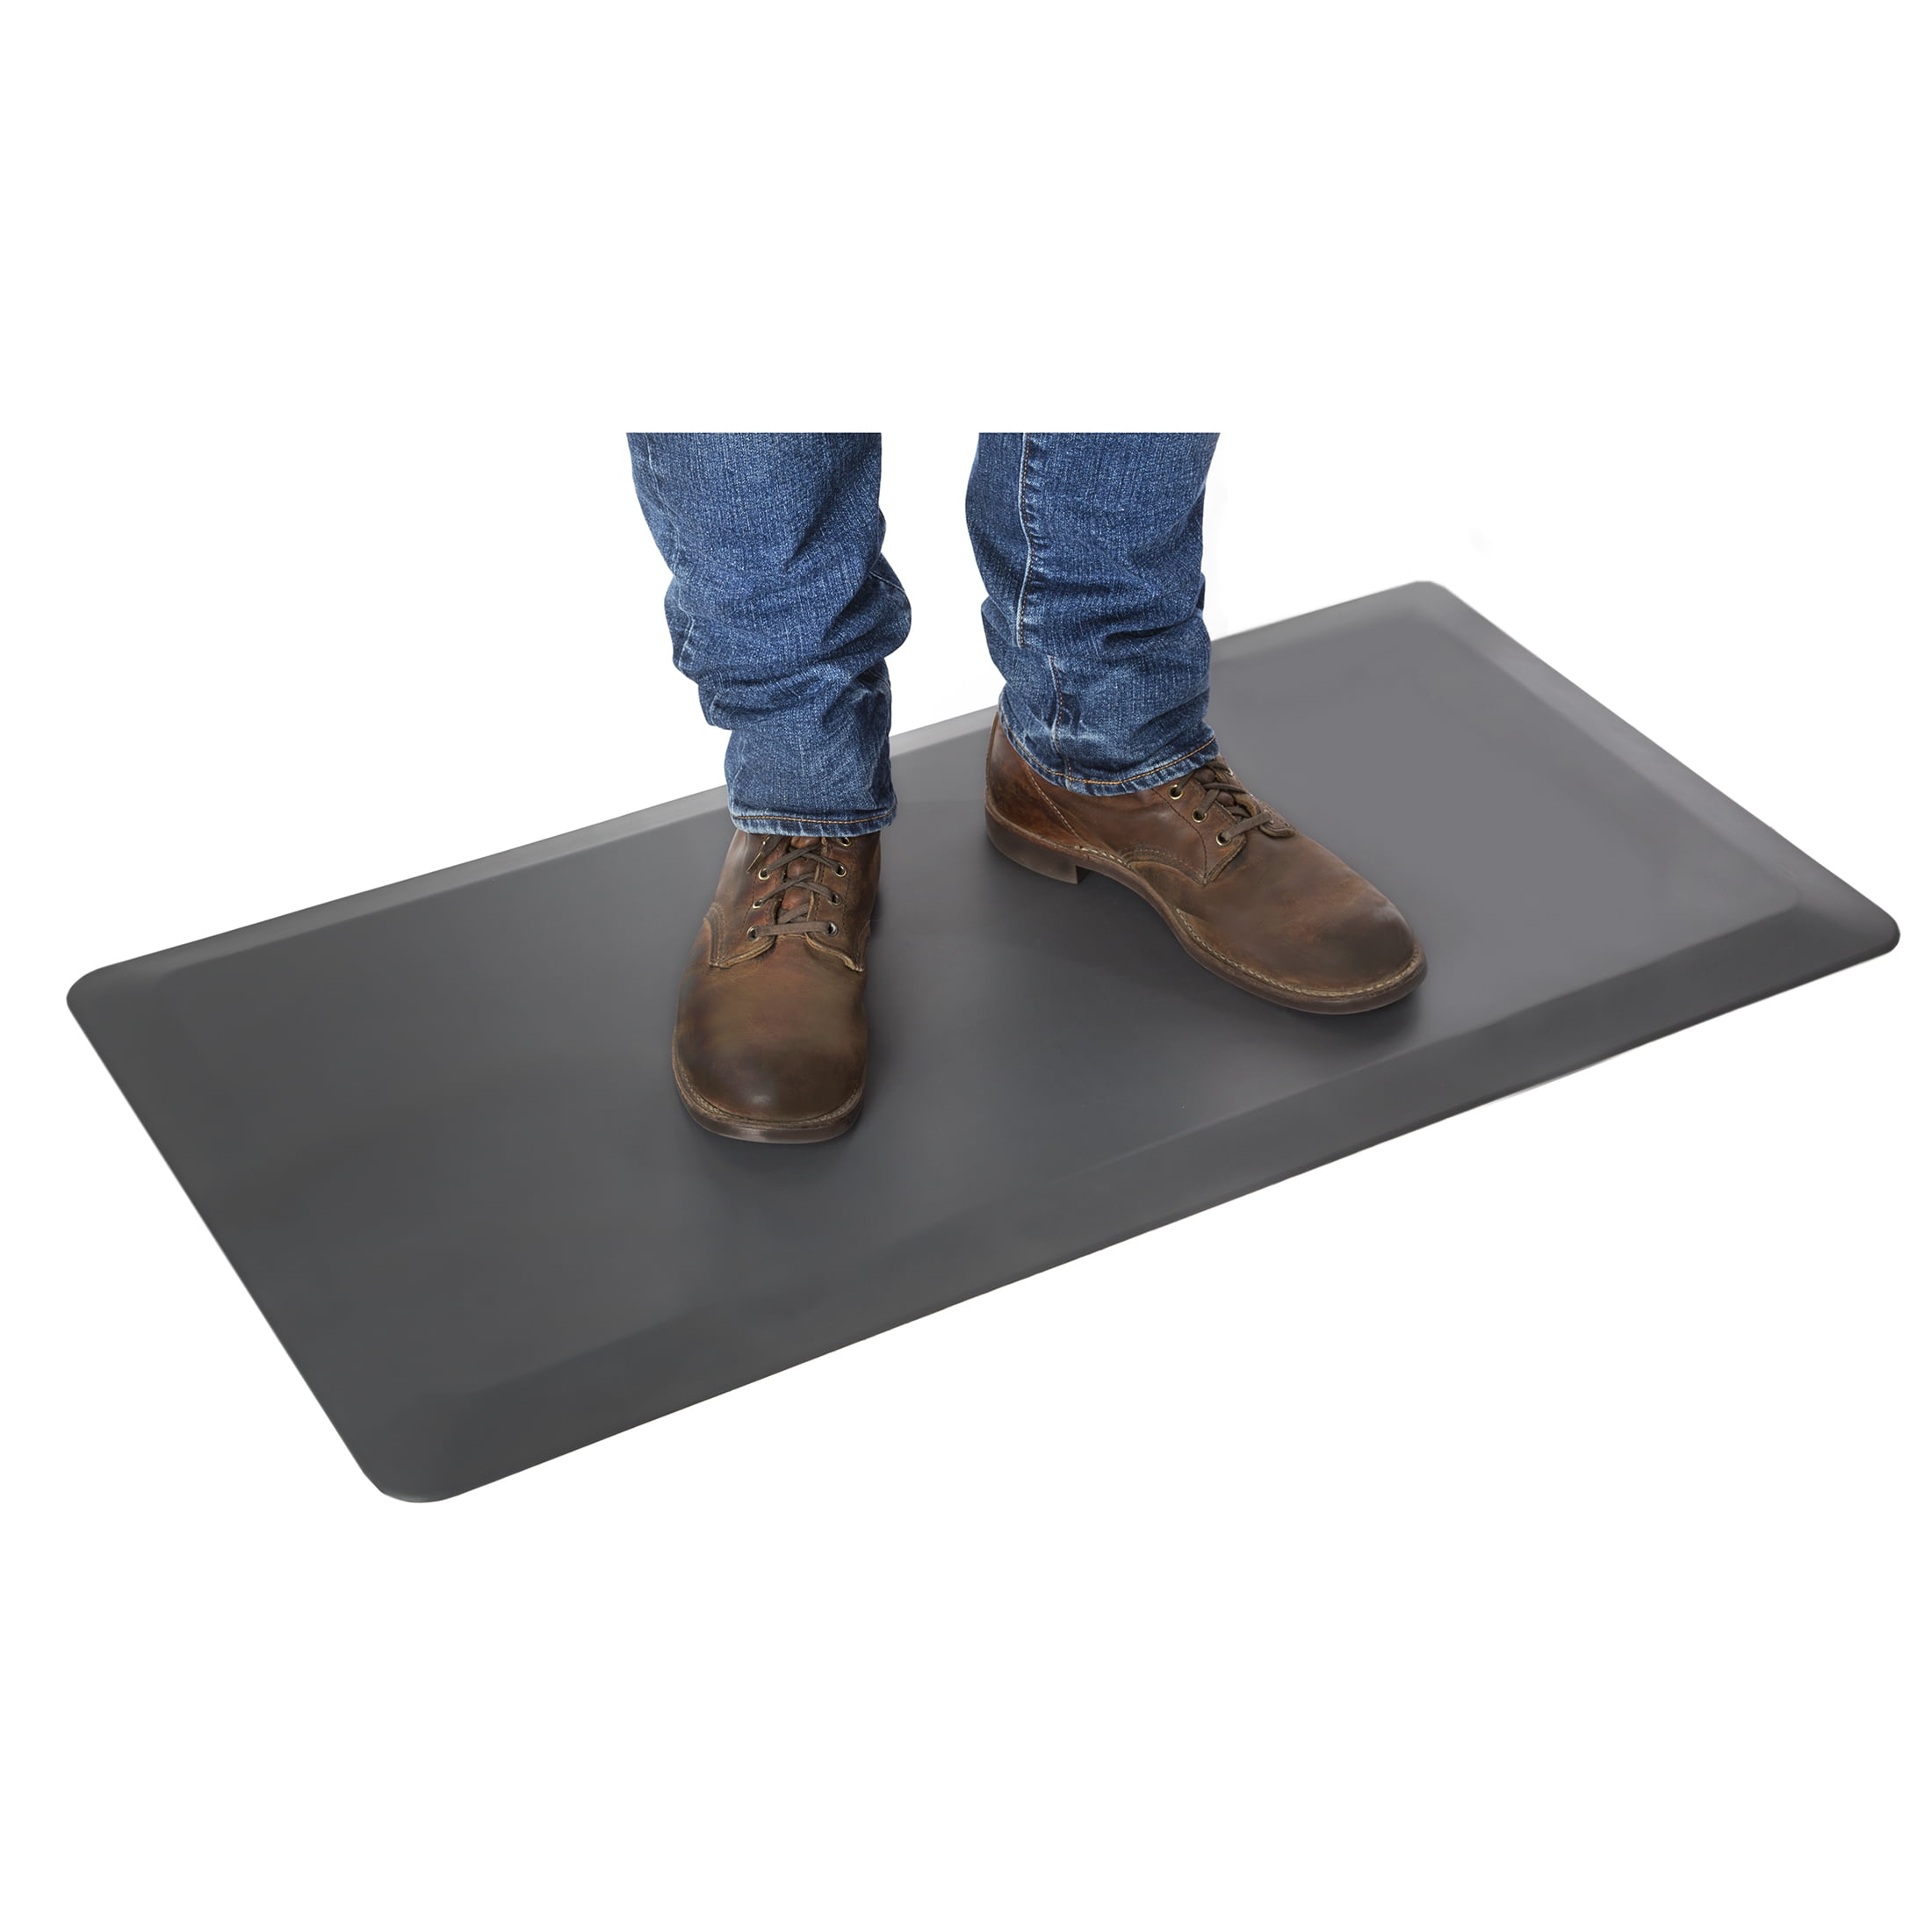 Vari Standing Mat 34x22 (VariDesk) - Anti Fatigue Mat for Standing Desk -  Cushioned Standing Desk Mat for Home & Kitchen - Floor Mat for Home, Office